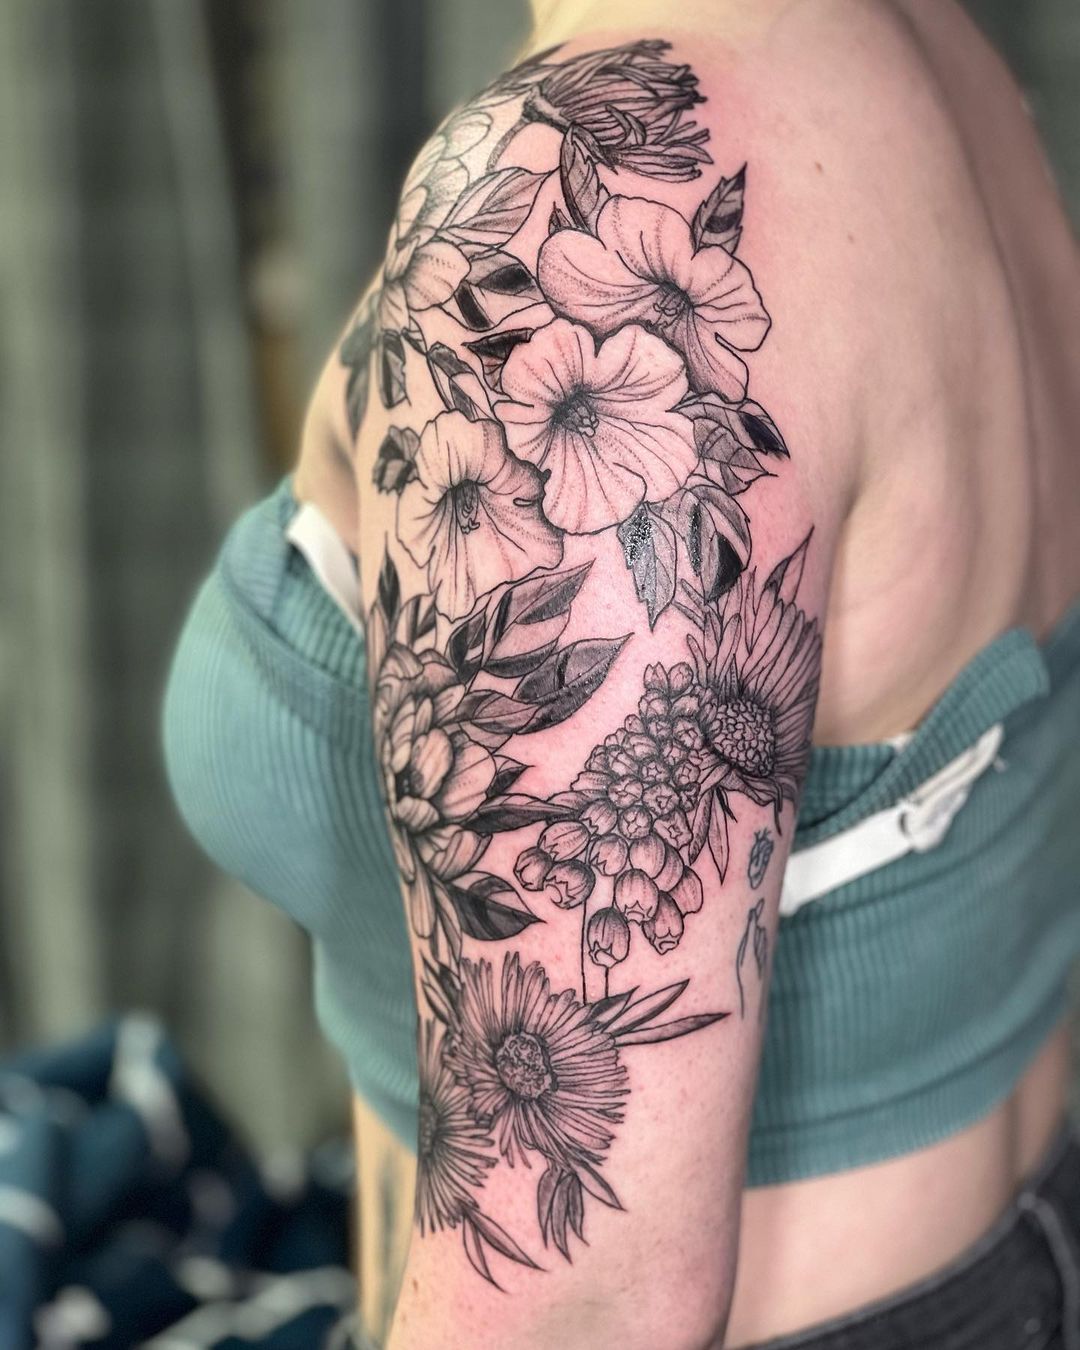 Tatuaje de flores de aster en la manga